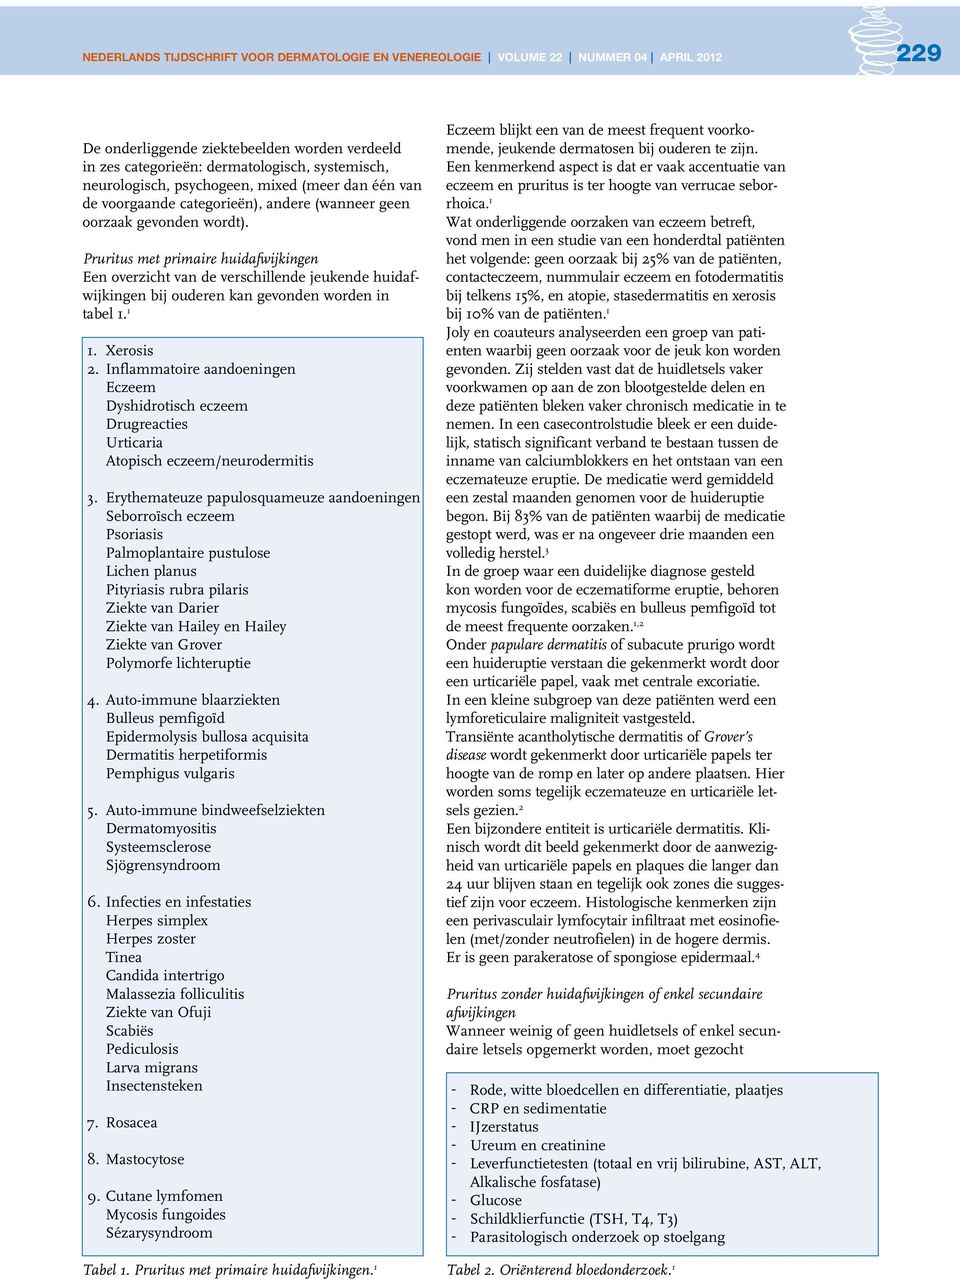 Inflammatoire aandoeningen Eczeem Dyshidrotisch eczeem Drugreacties Urticaria Atopisch eczeem/neurodermitis 3.